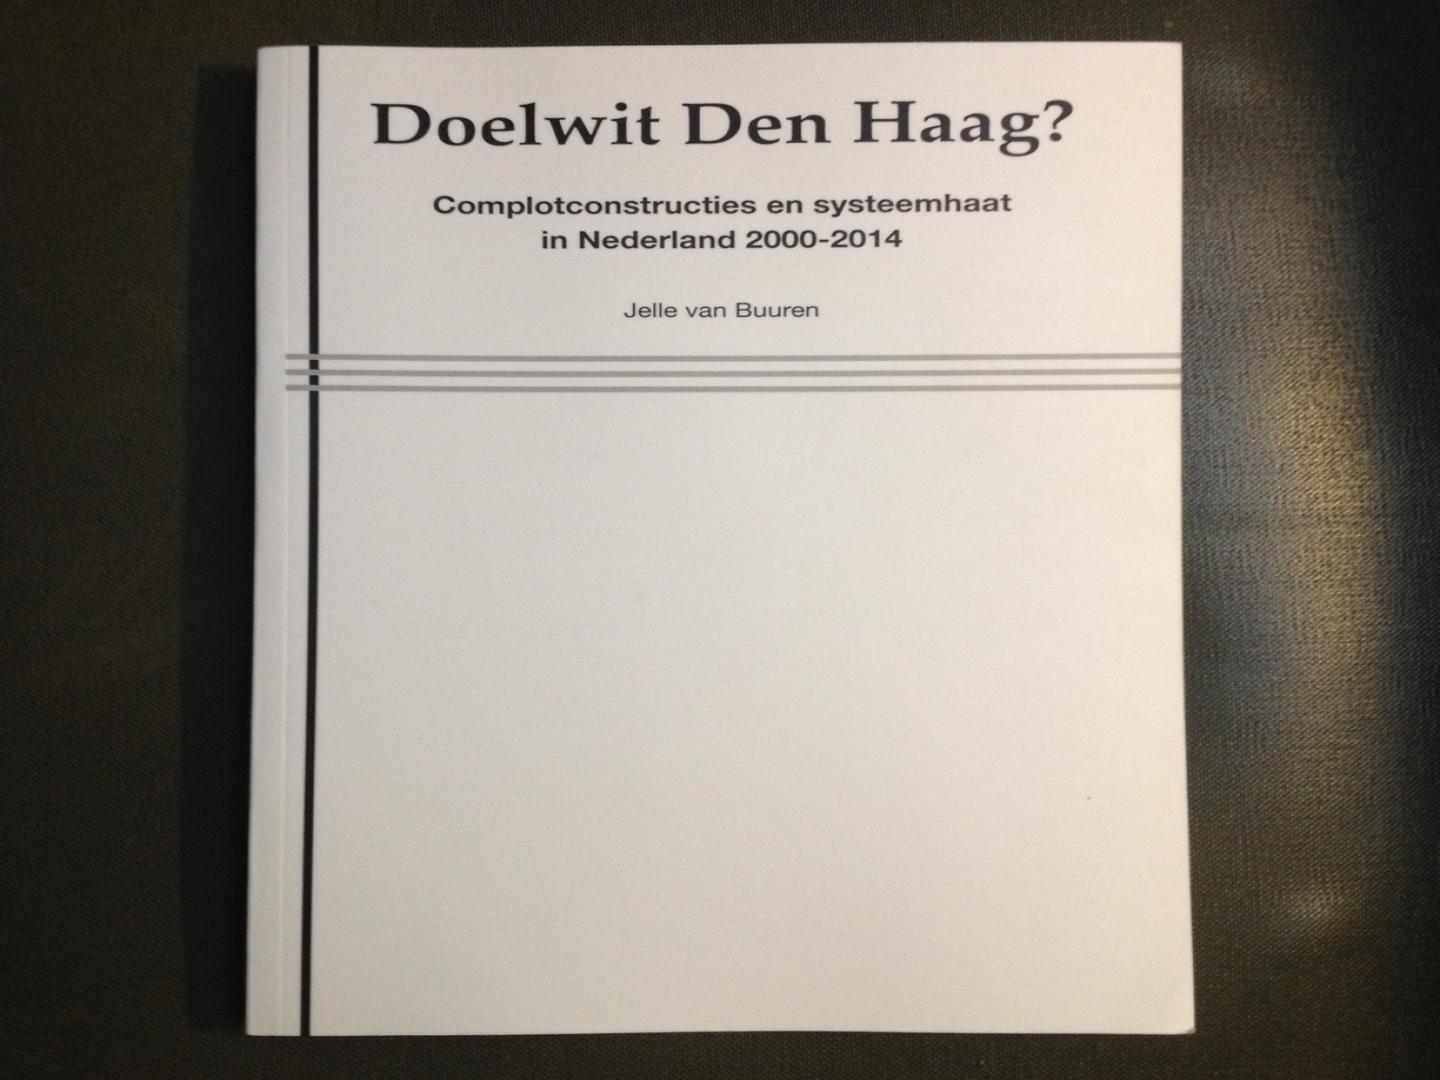 Jelle van Buuren - Doelwit Den Haag? Complotconstructies en systeemhaat in Nederland 2000-2014